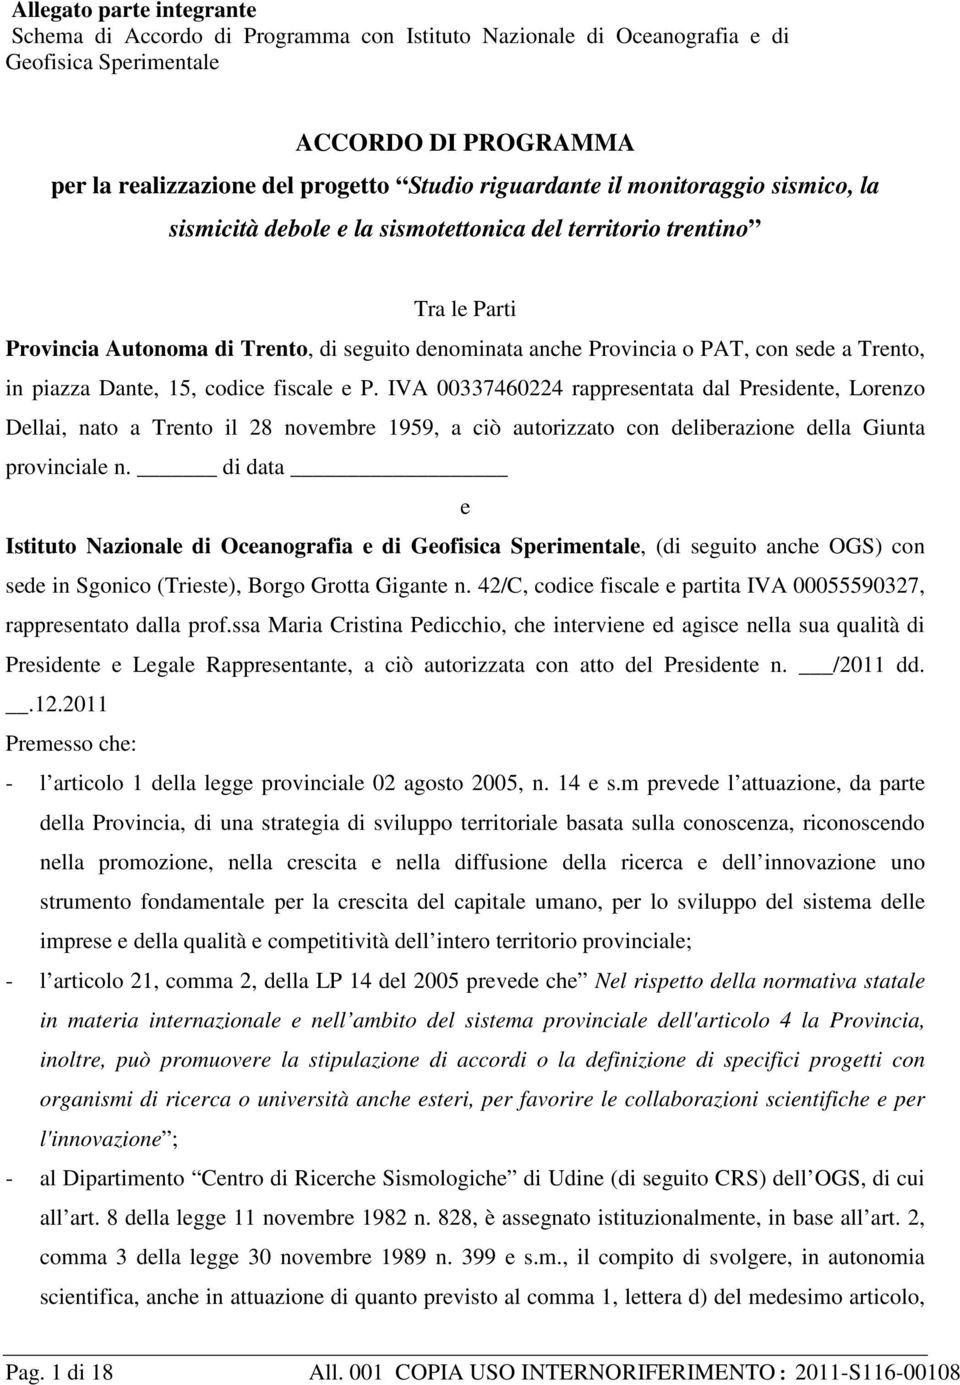 piazza Dante, 15, codice fiscale e P. IVA 00337460224 rappresentata dal Presidente, Lorenzo Dellai, nato a Trento il 28 novembre 1959, a ciò autorizzato con deliberazione della Giunta provinciale n.